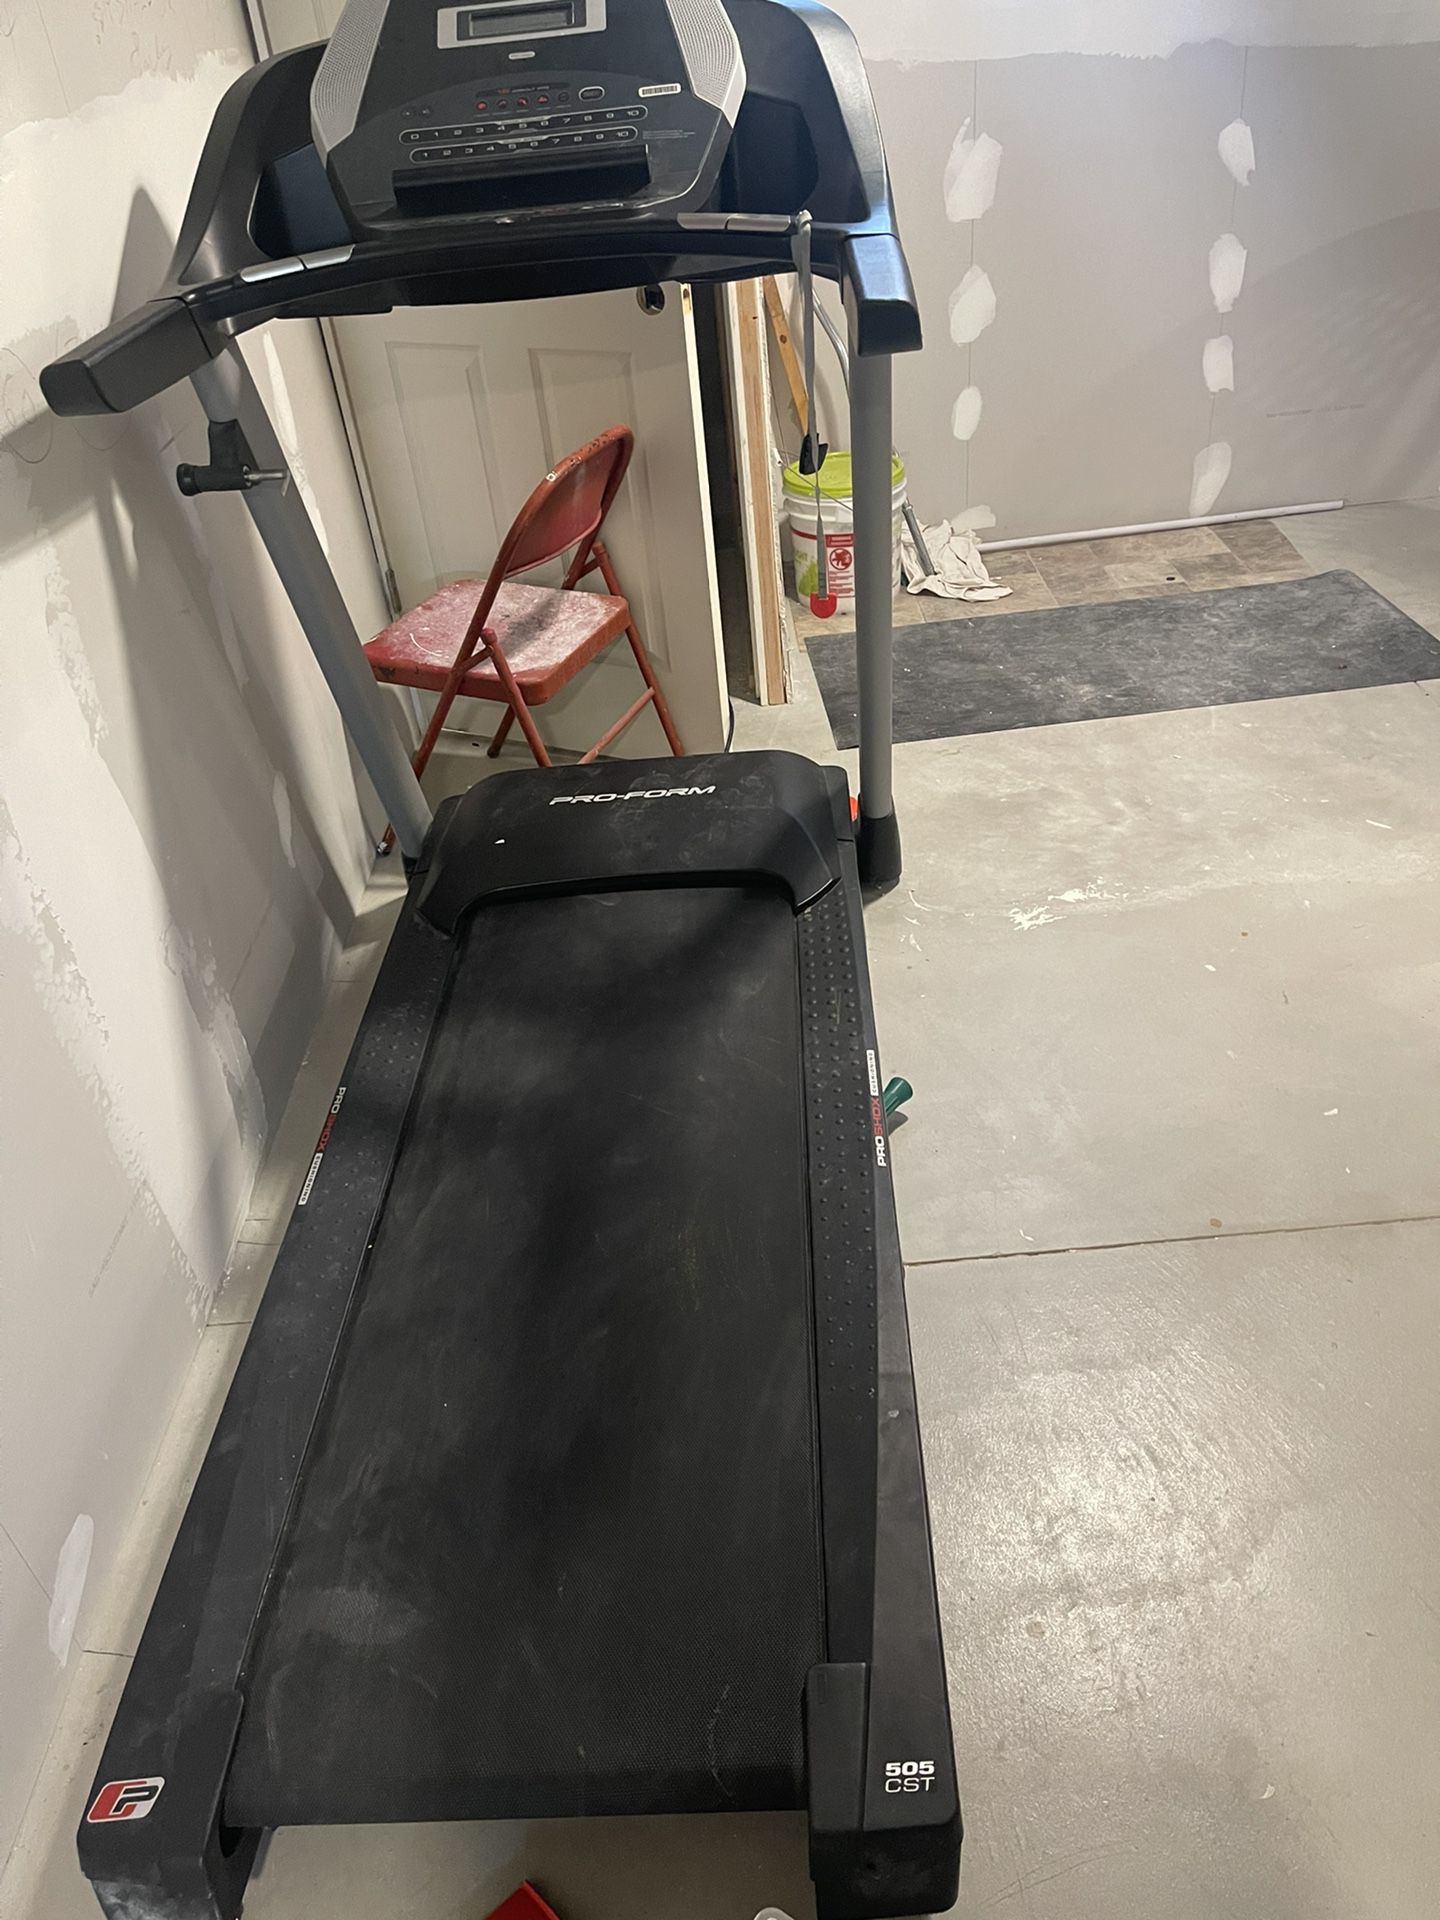 Preform Treadmill 